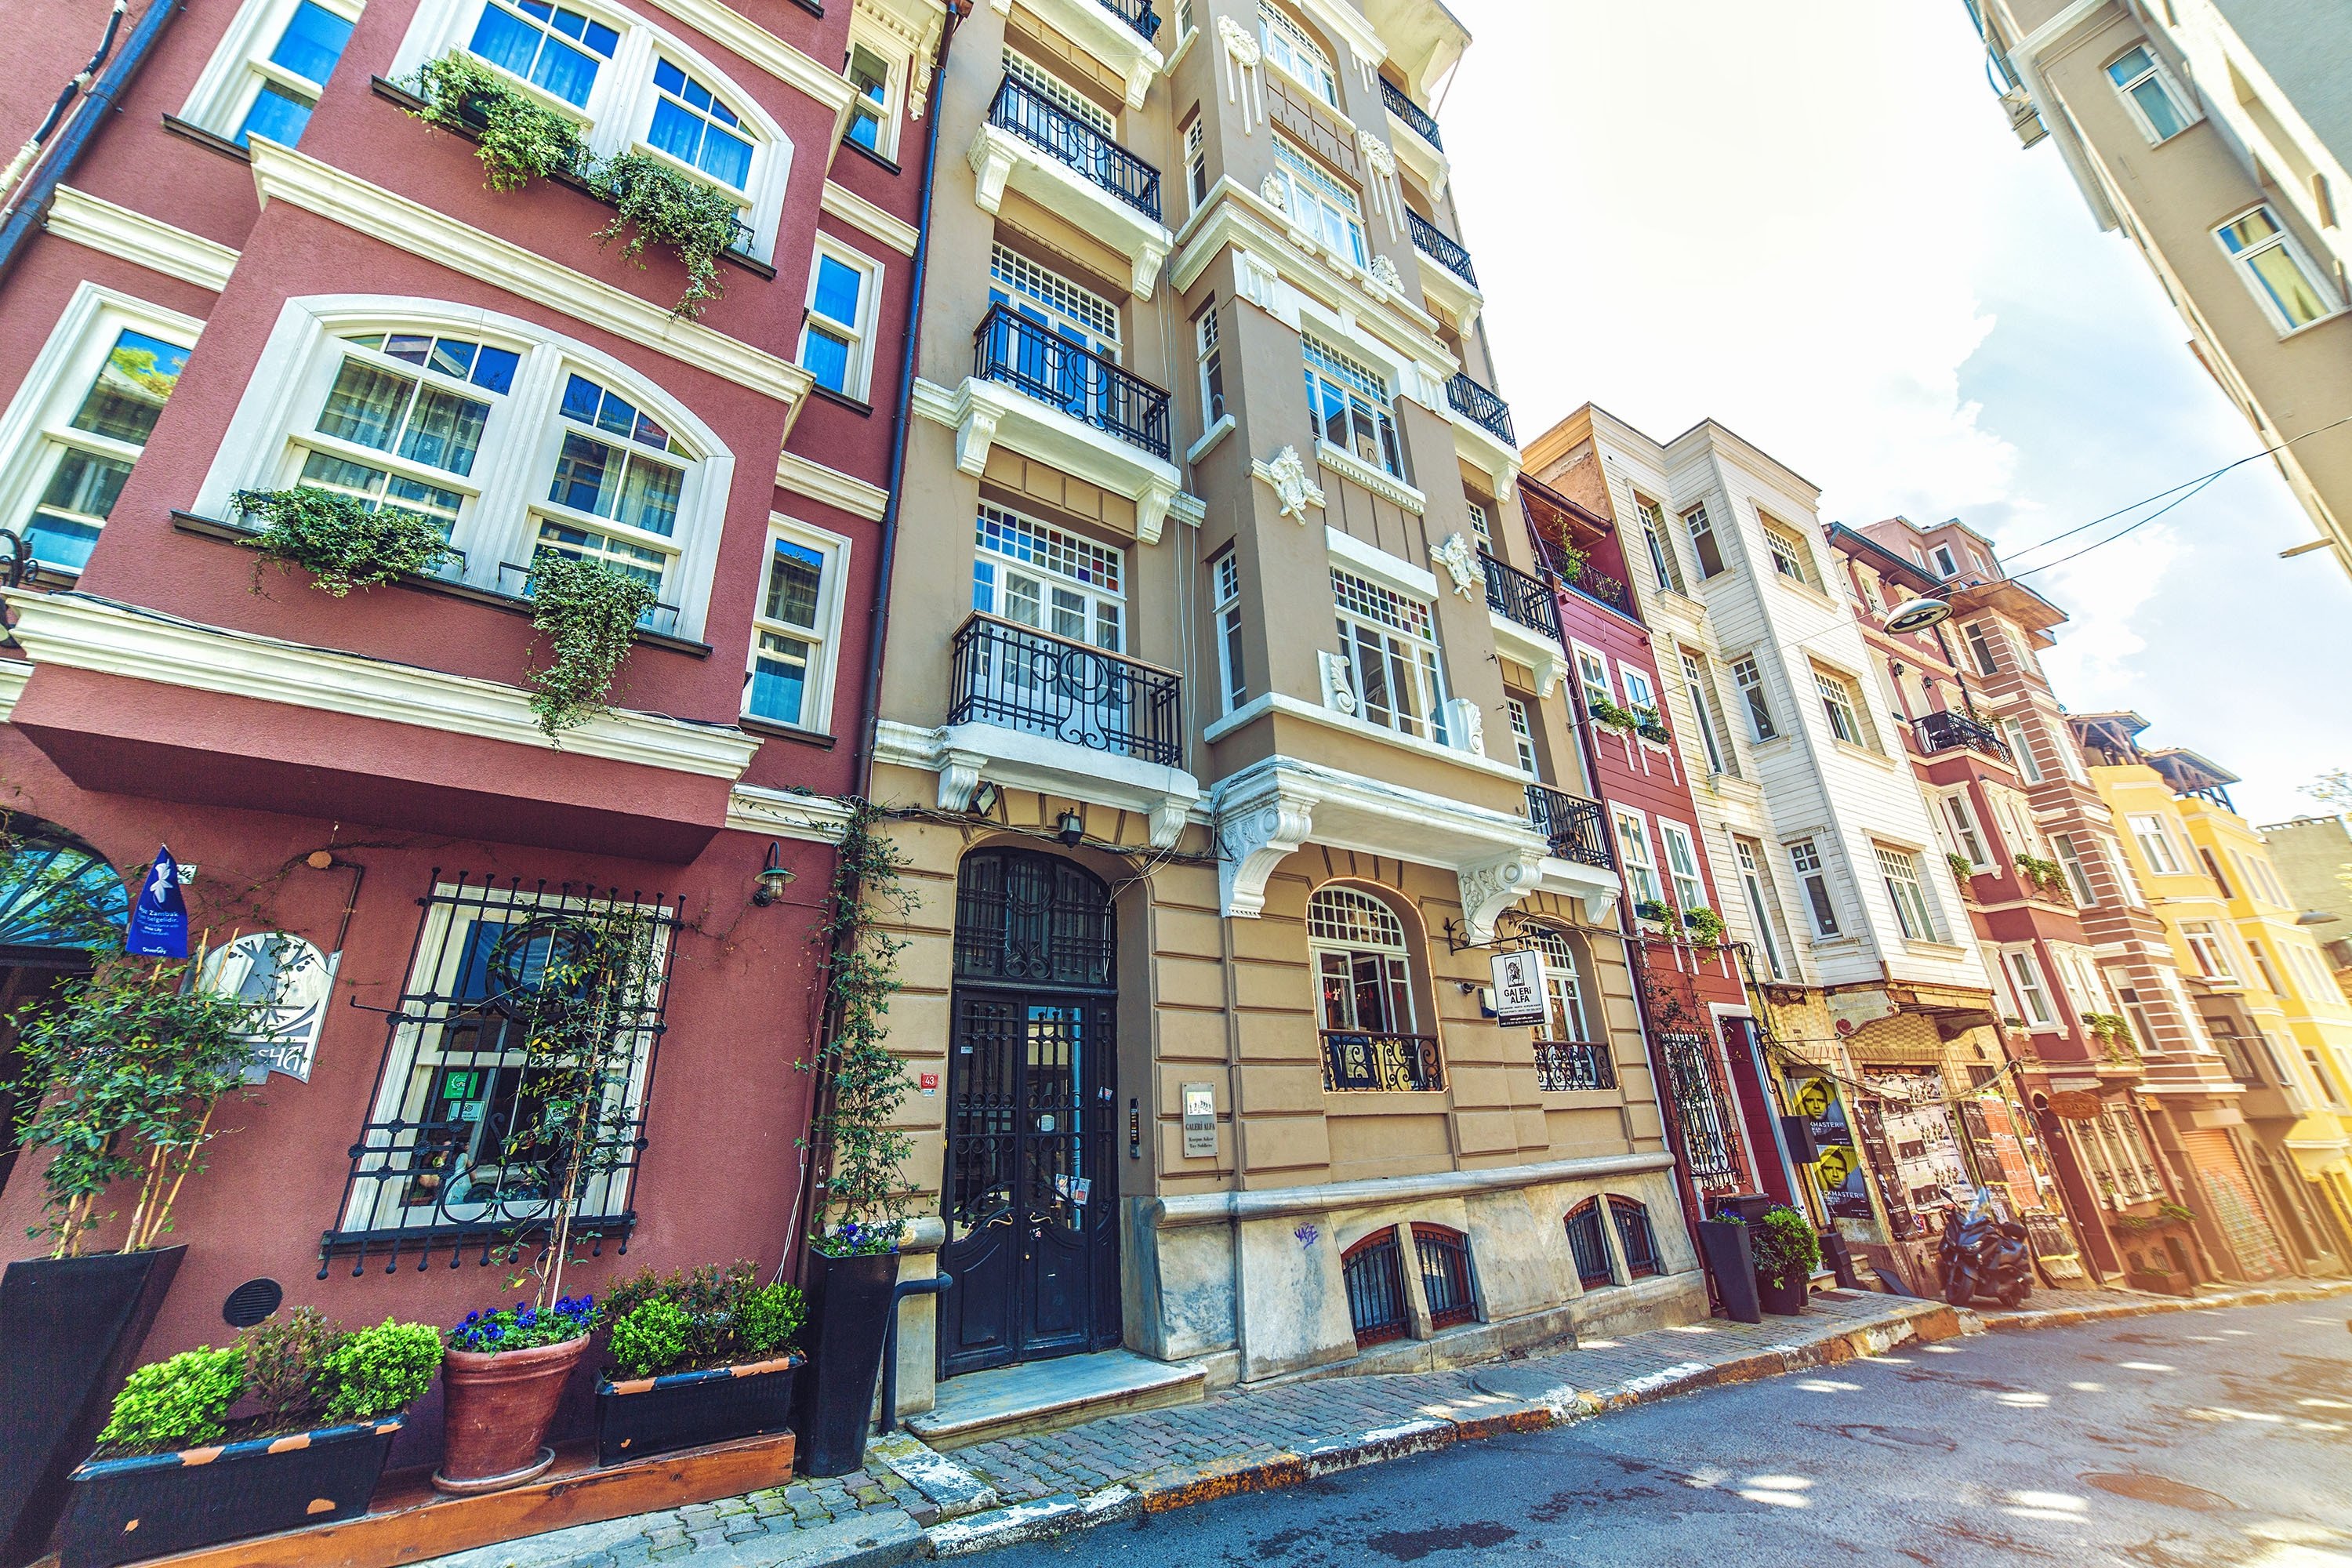 Arsitektur umum dan bangunan tempat tinggal di Cihangir, Istanbul, 21 April 2018. (Foto Shutterstock) 